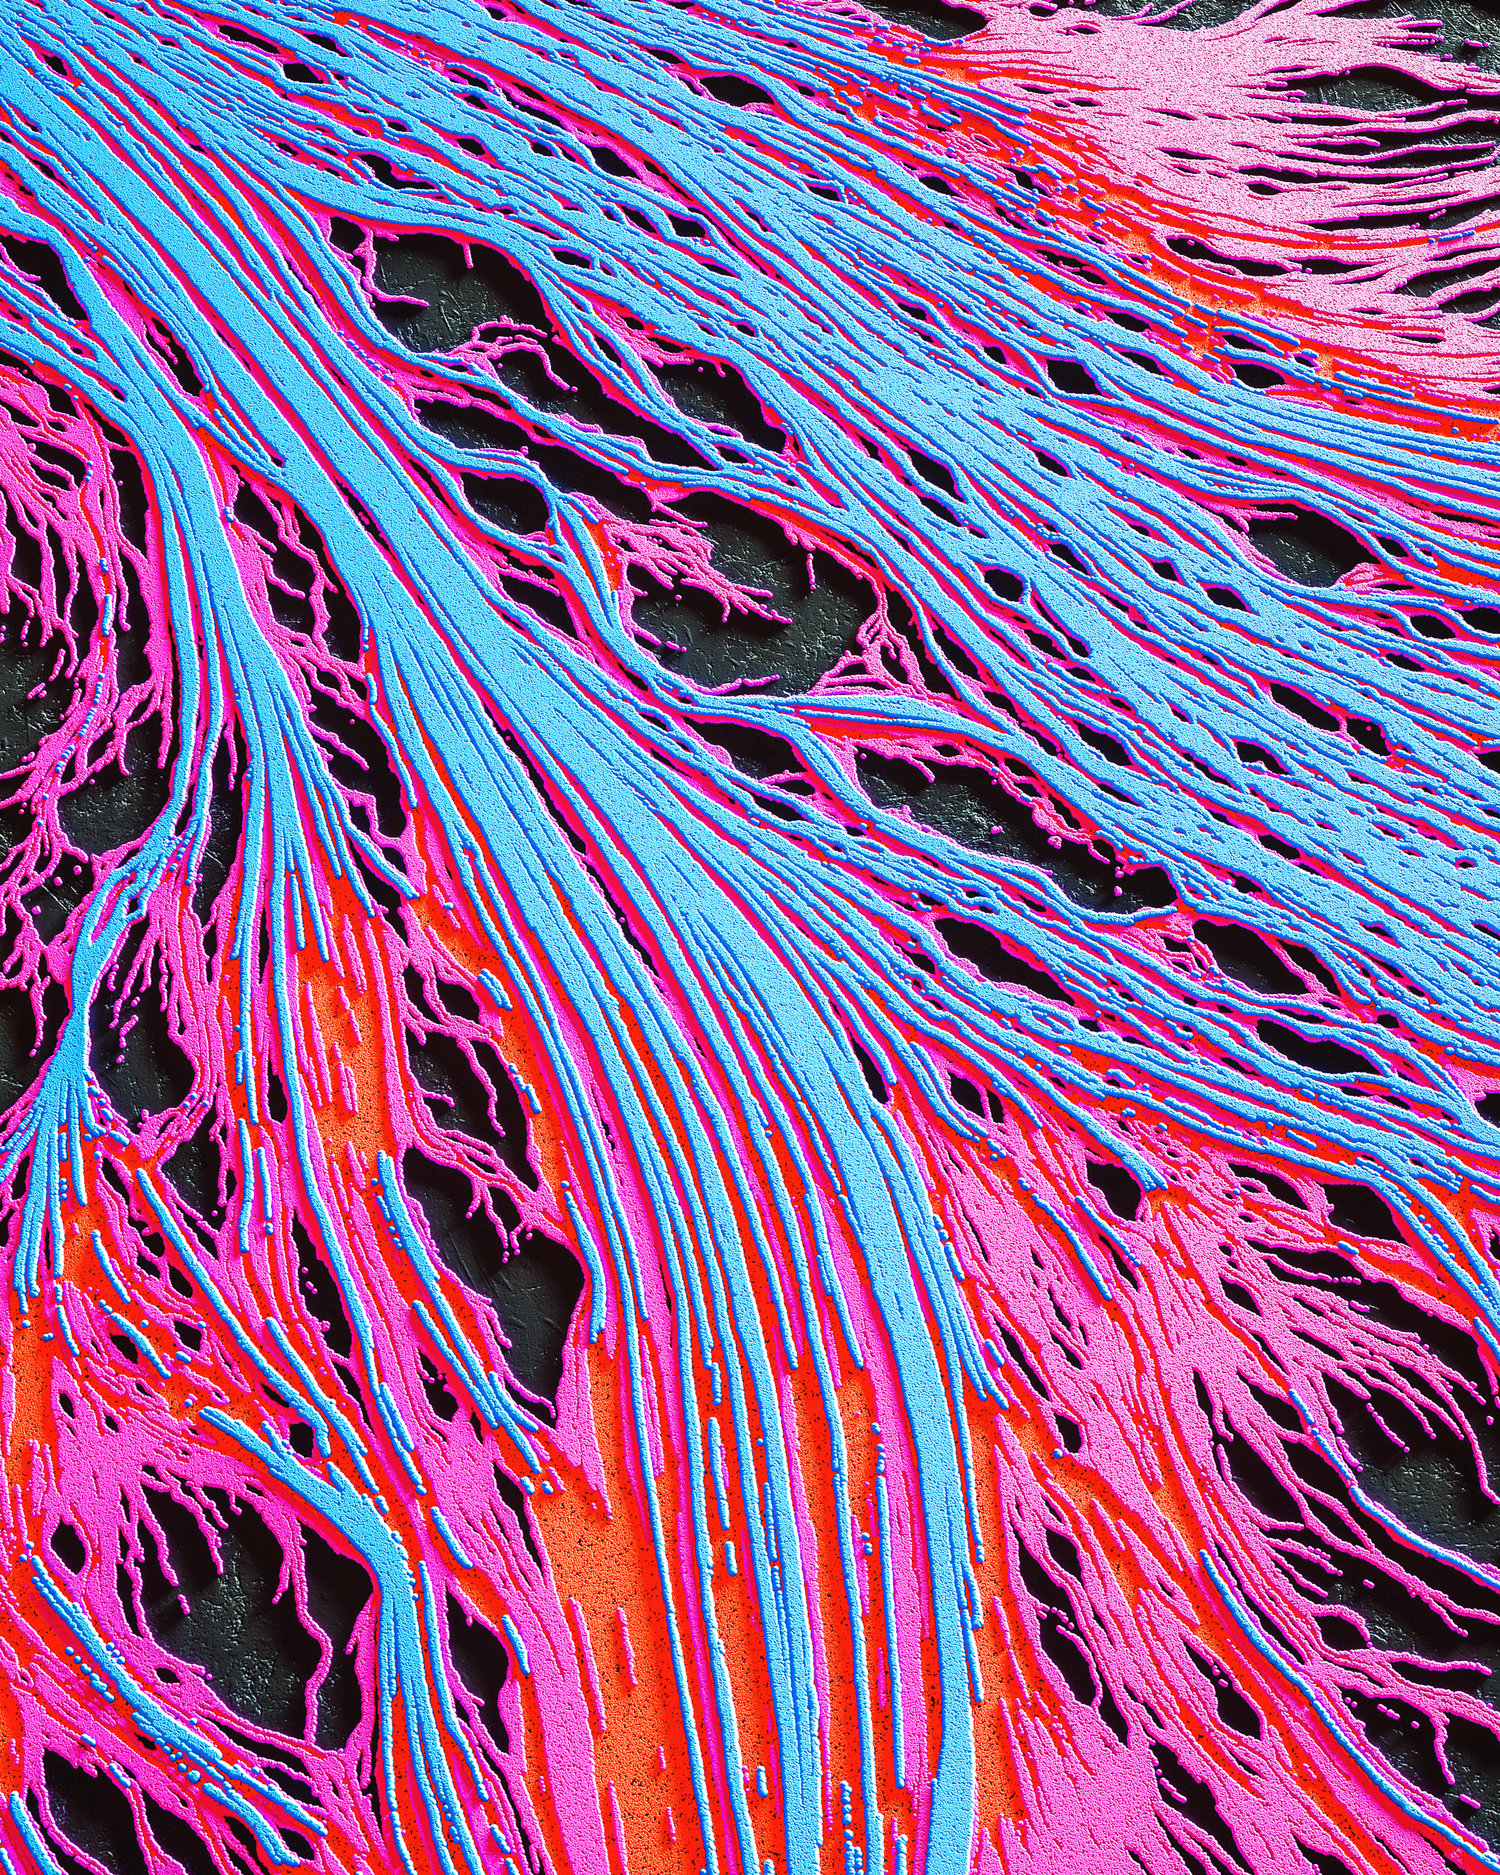 细微脉络彩色立体高清纤维[06-10-17]-20M.jpg